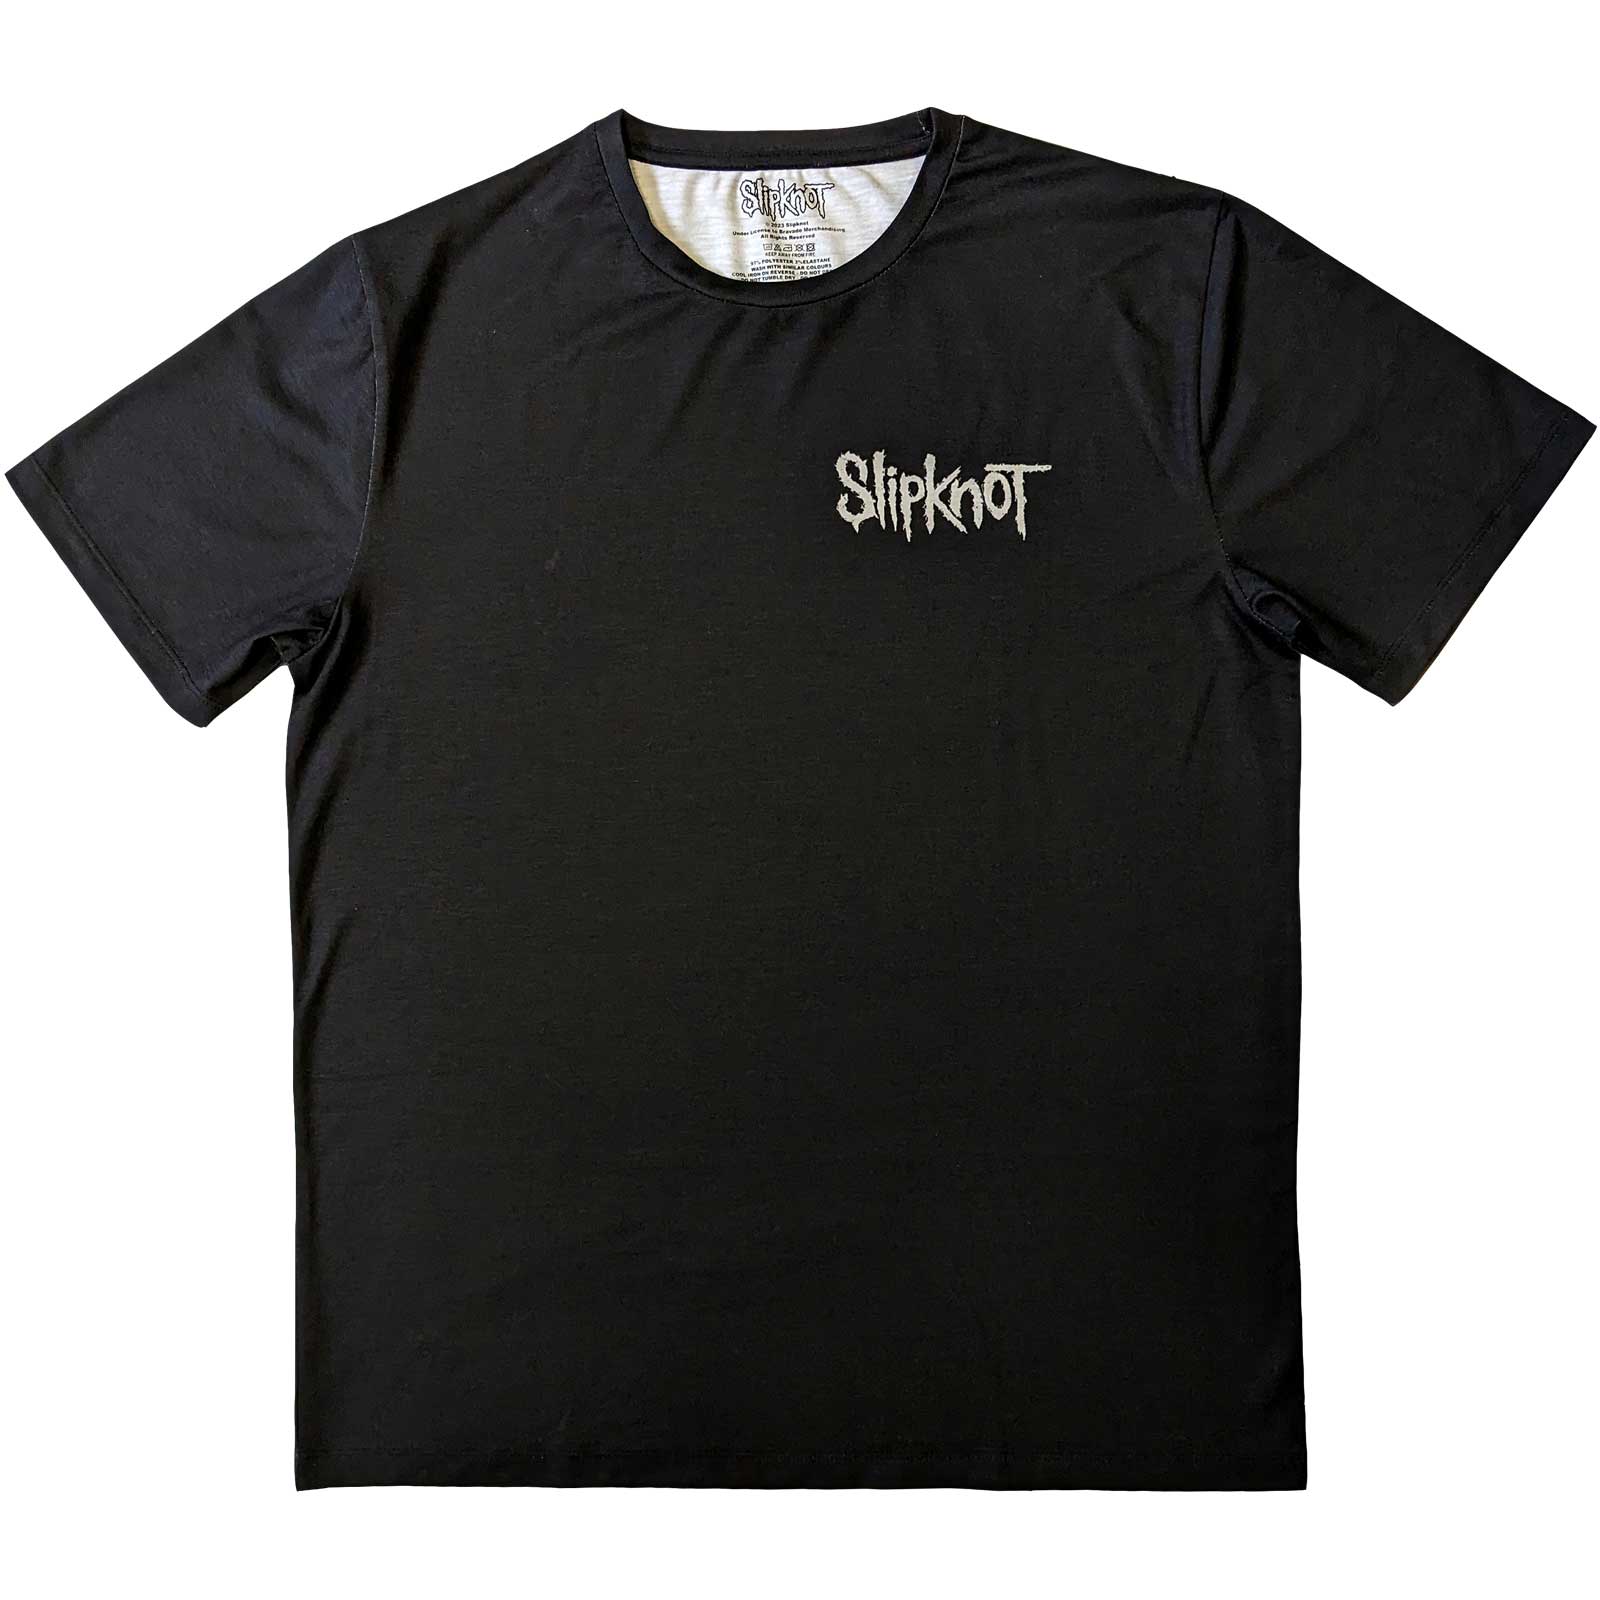 Slipknot T-Shirt - Clown (Back Print) - Unisex Official Licensed Design